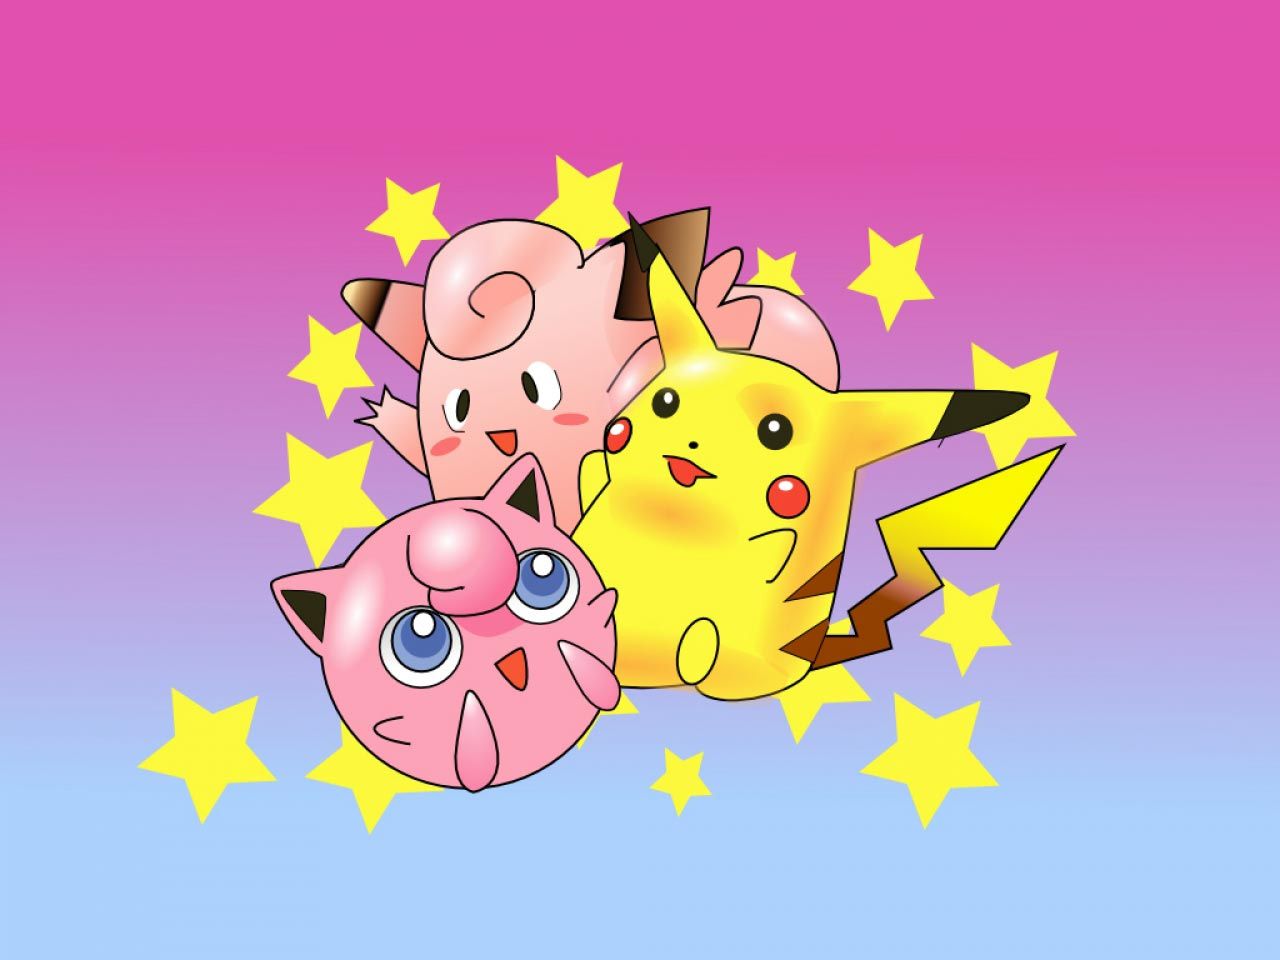 Free Pink Pokemon Wallpaper Image Download Free